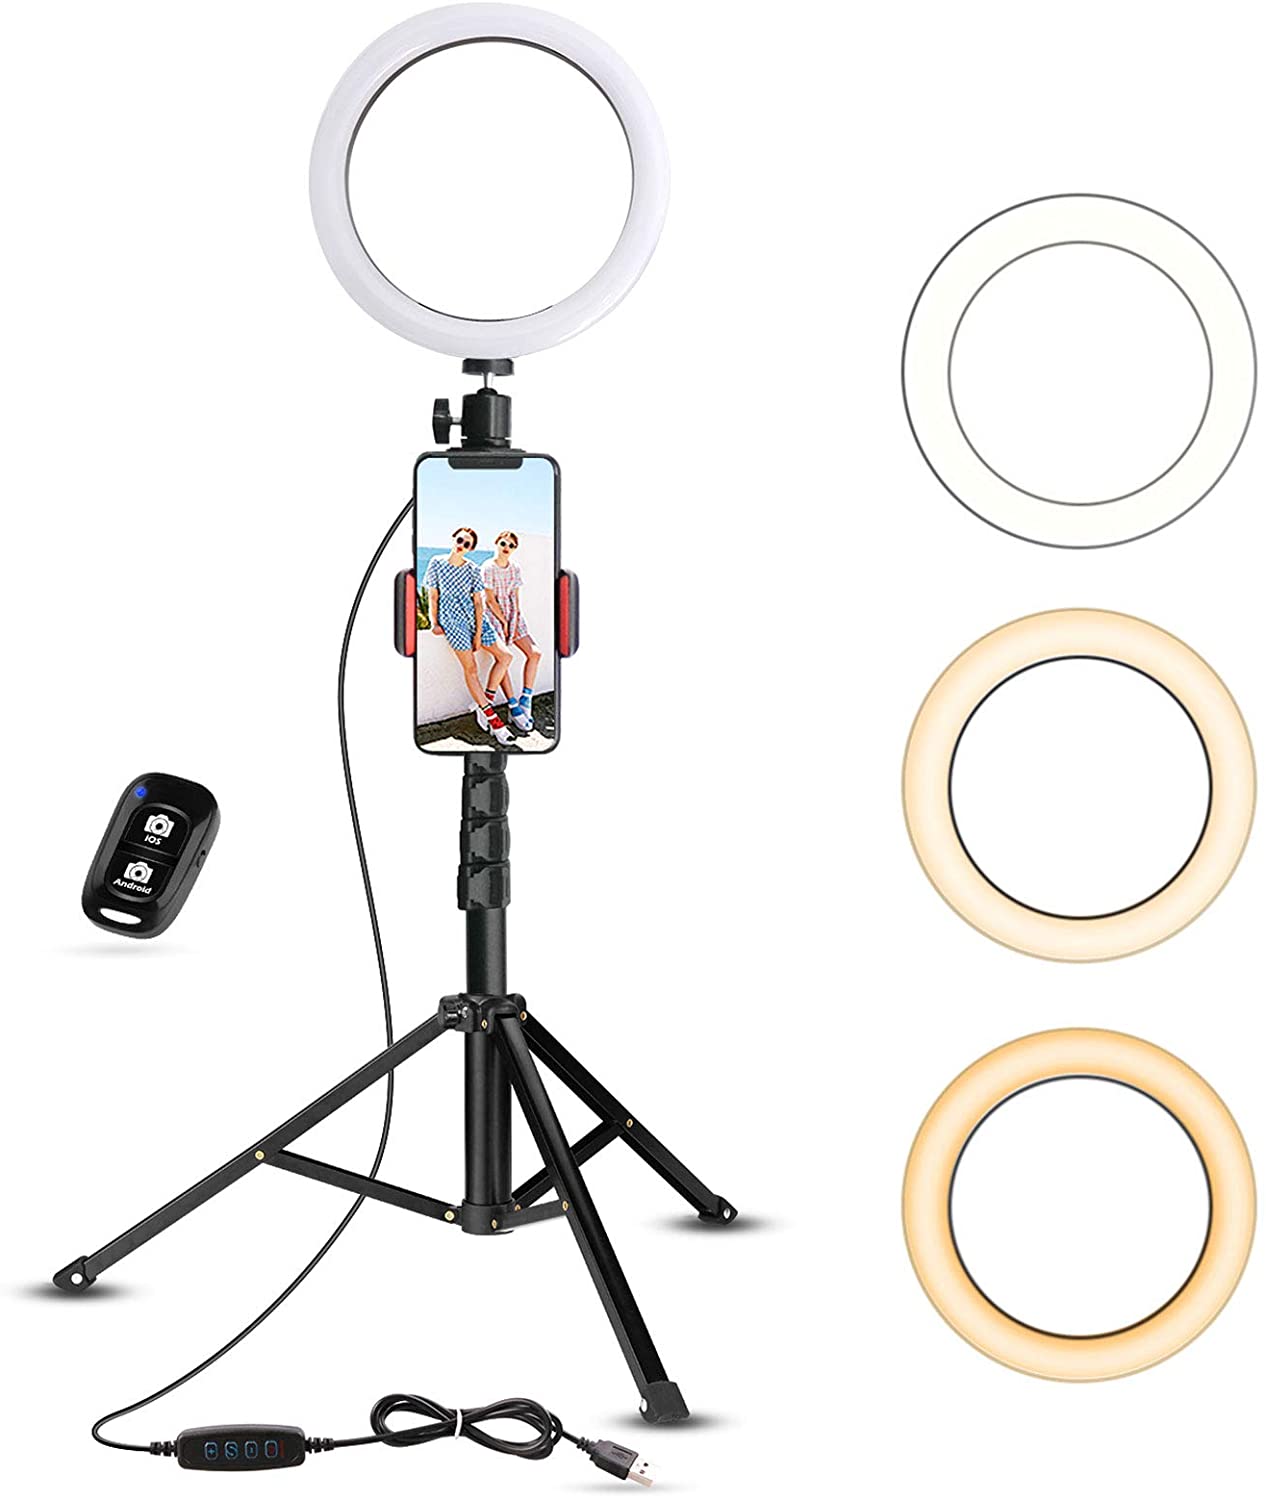 UBeesize Mini Led Camera Ring Light